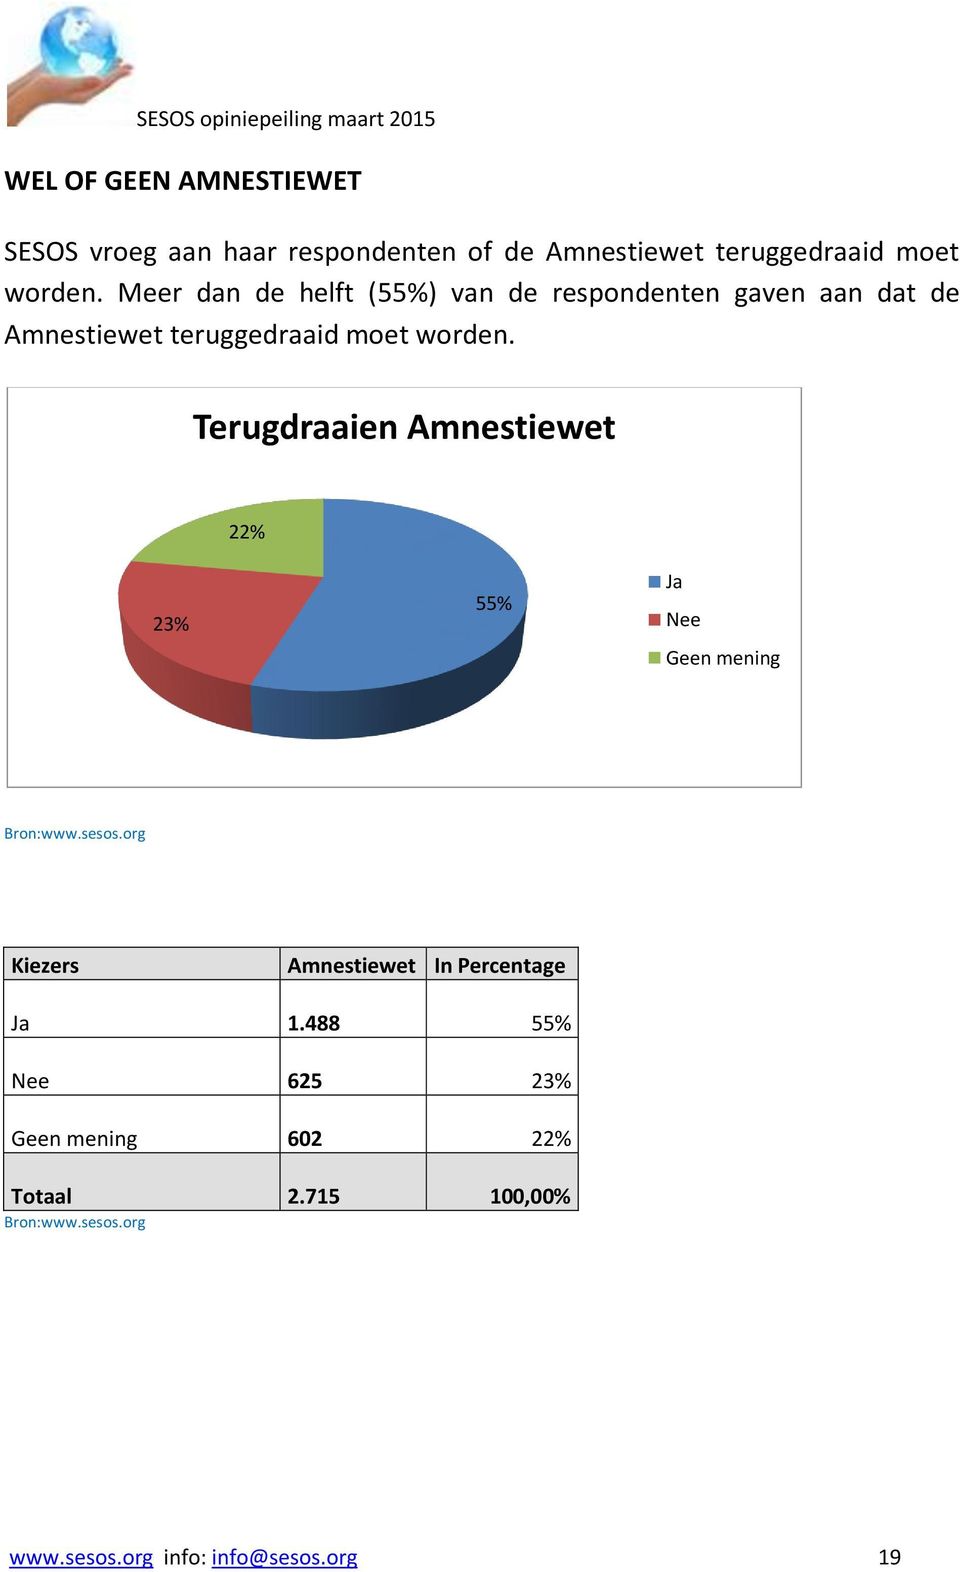 Meer dan de helft (55%) van de respondenten gaven aan dat de  Terugdraaien Amnestiewet % 3% 55% Ja